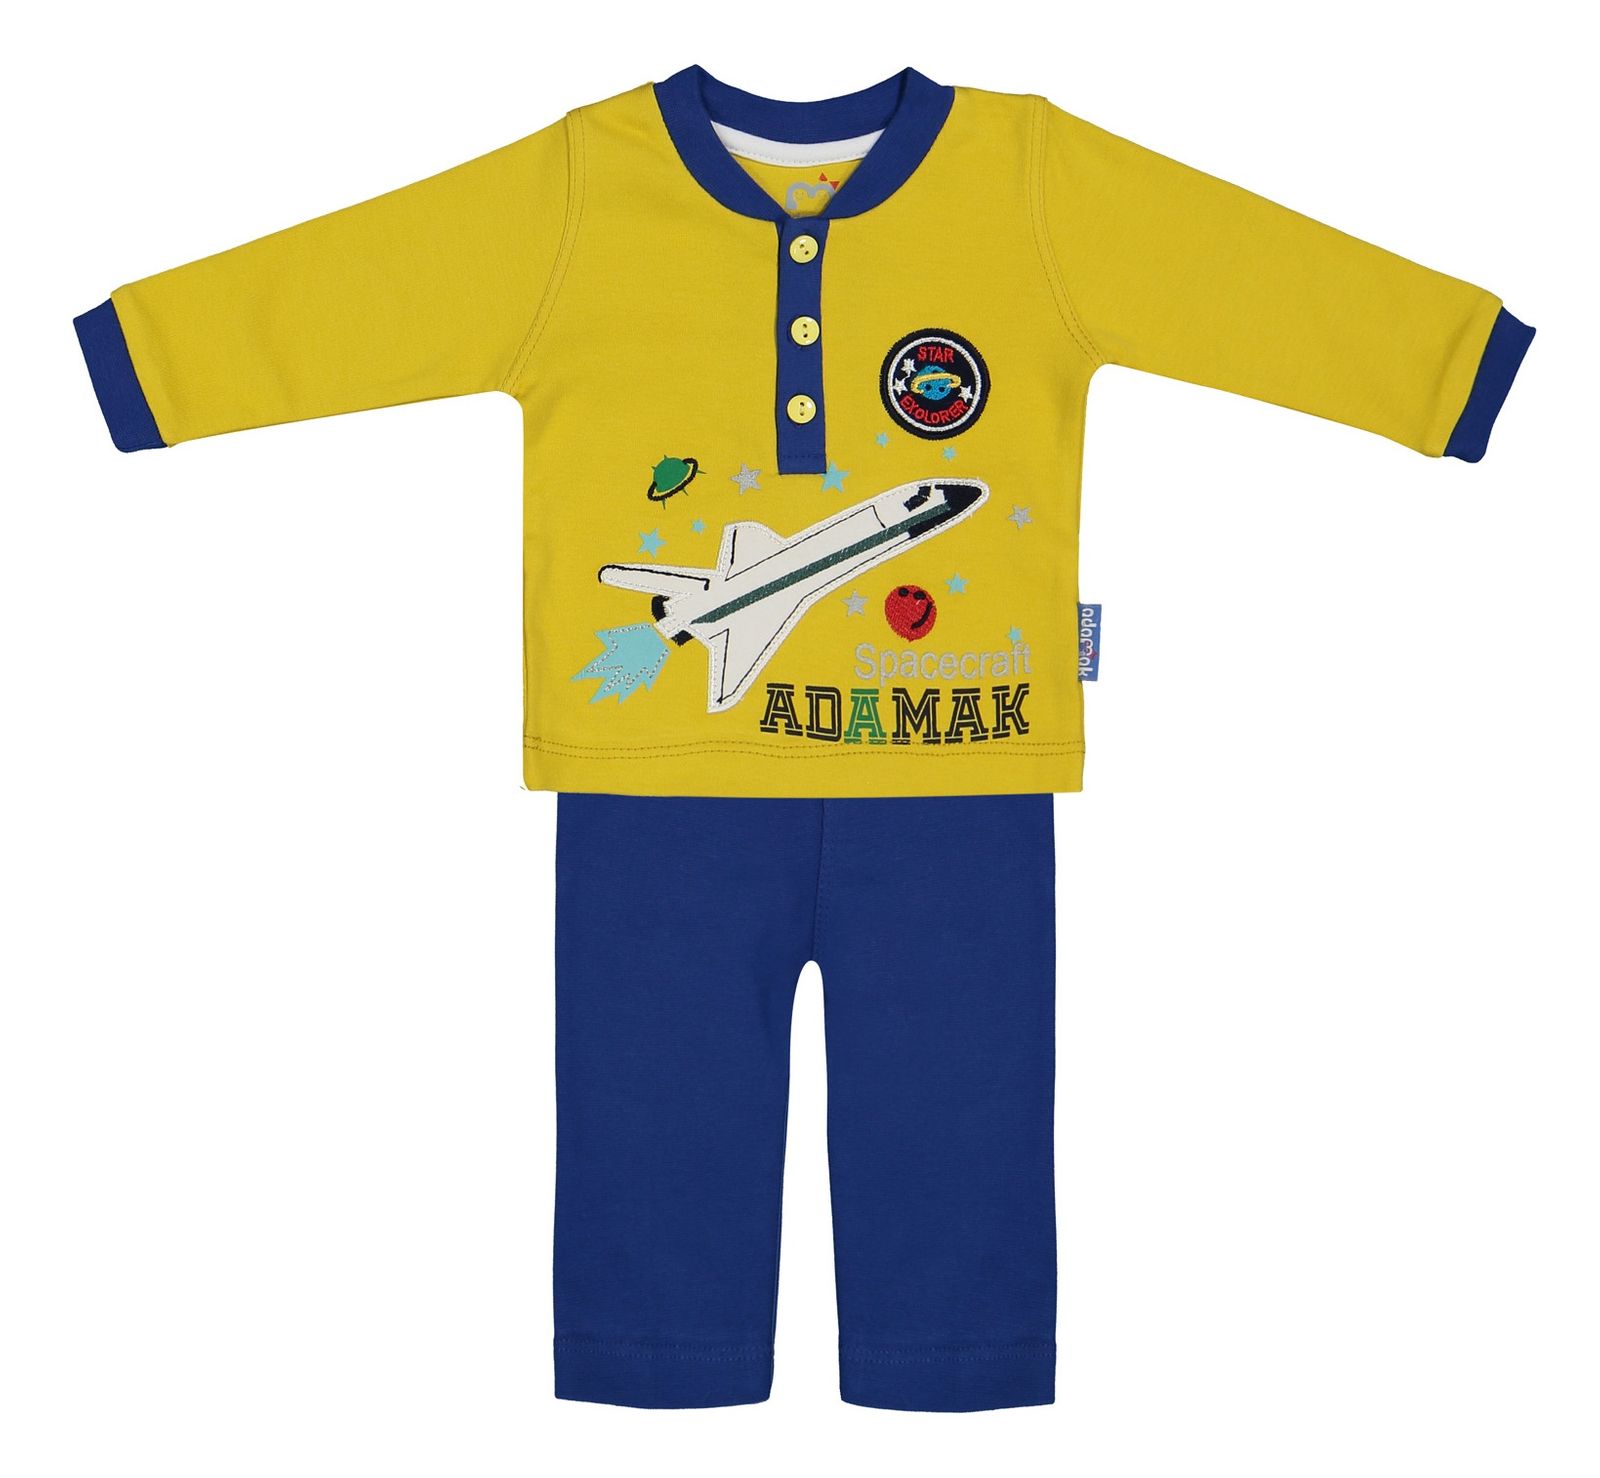 ست تی شرت و شلوار نوزادی آدمک مدل 2171101-15 - خردلی - 2